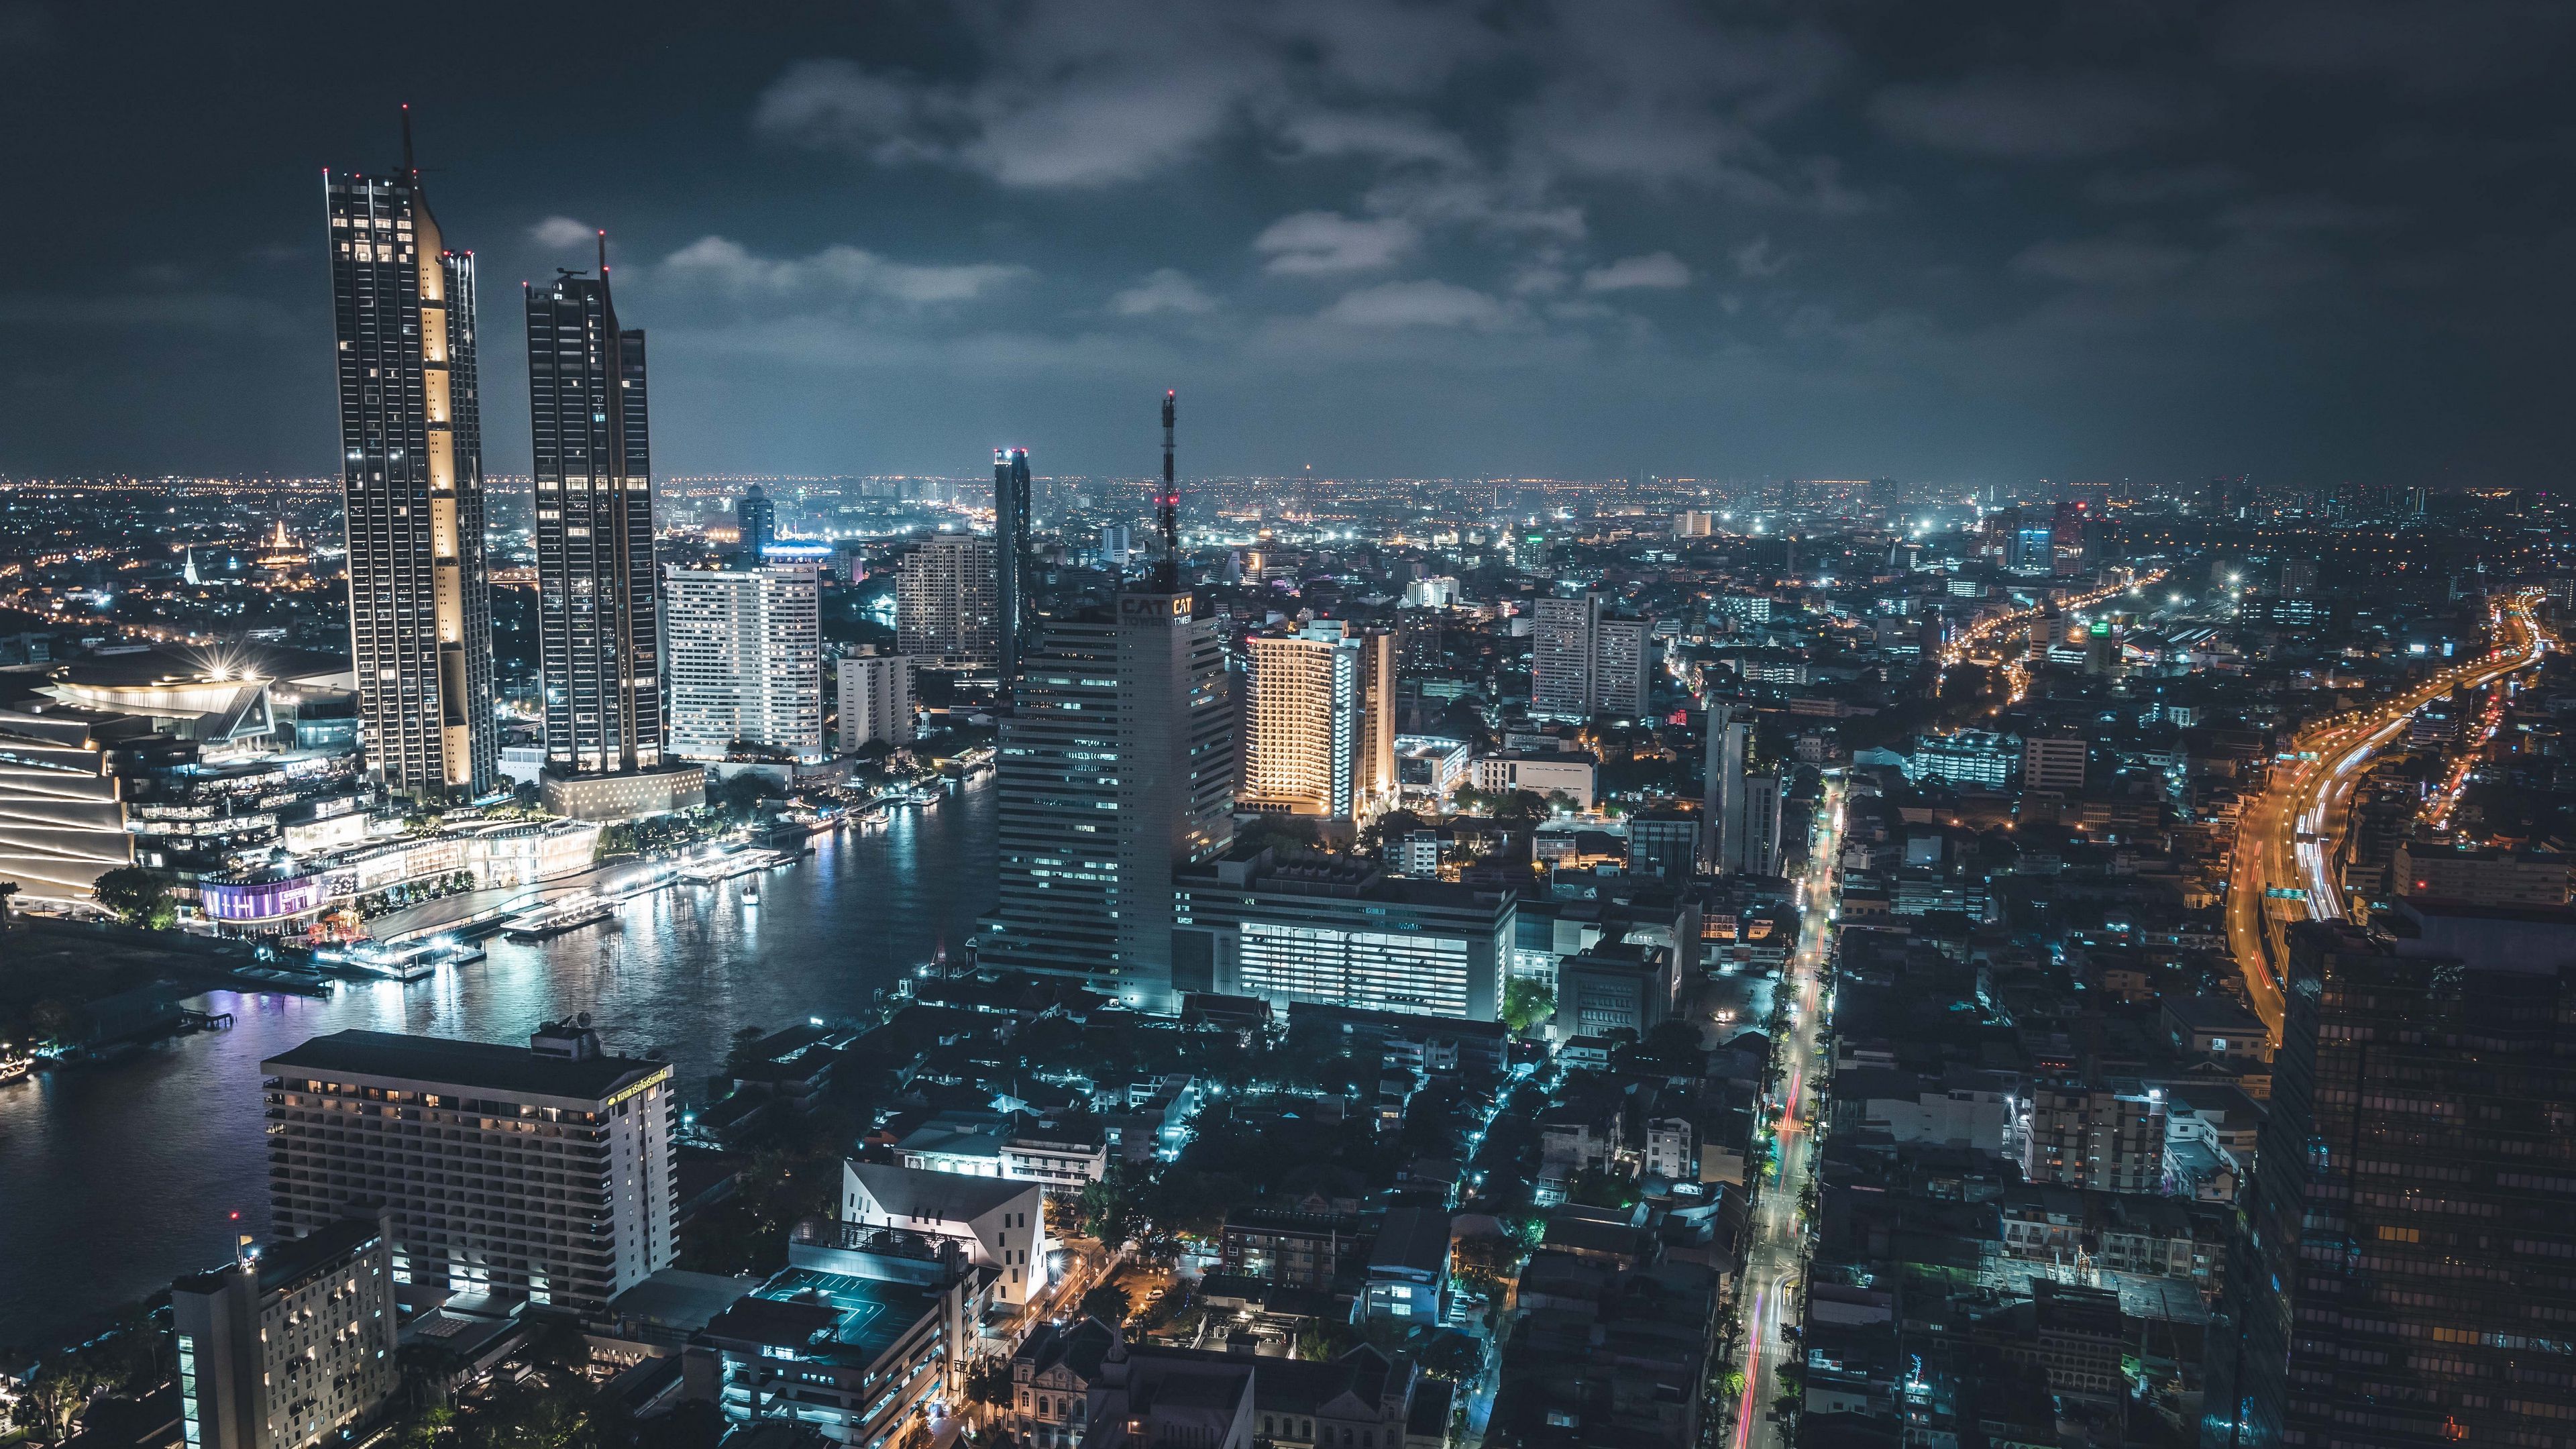 Bangkok Skyscraper In Night Wallpapers